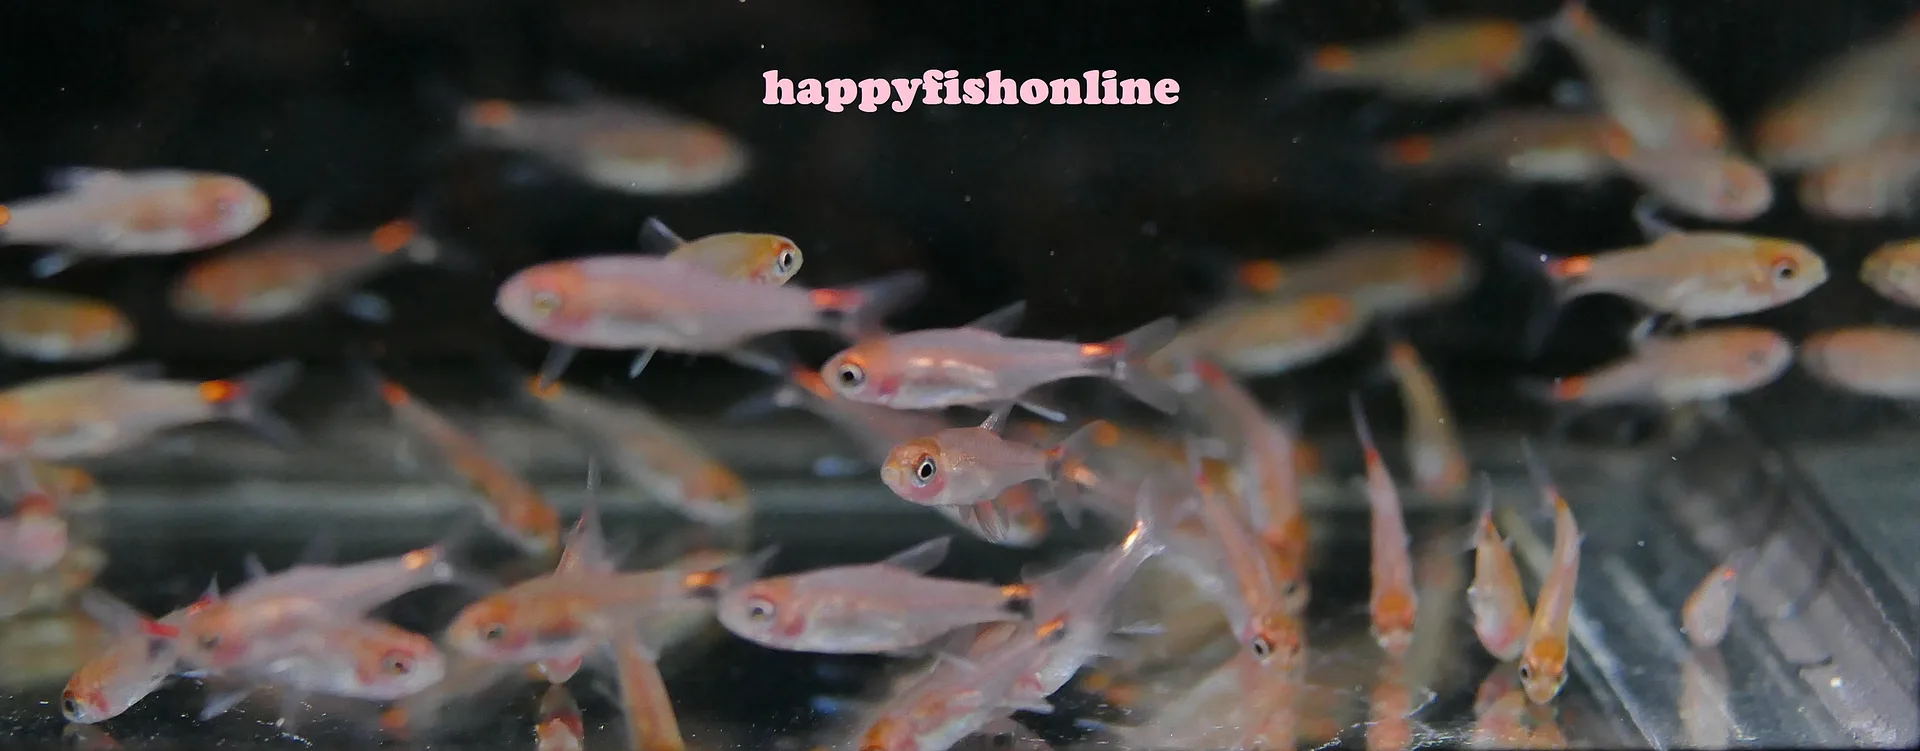 happyfishonline's Gallery